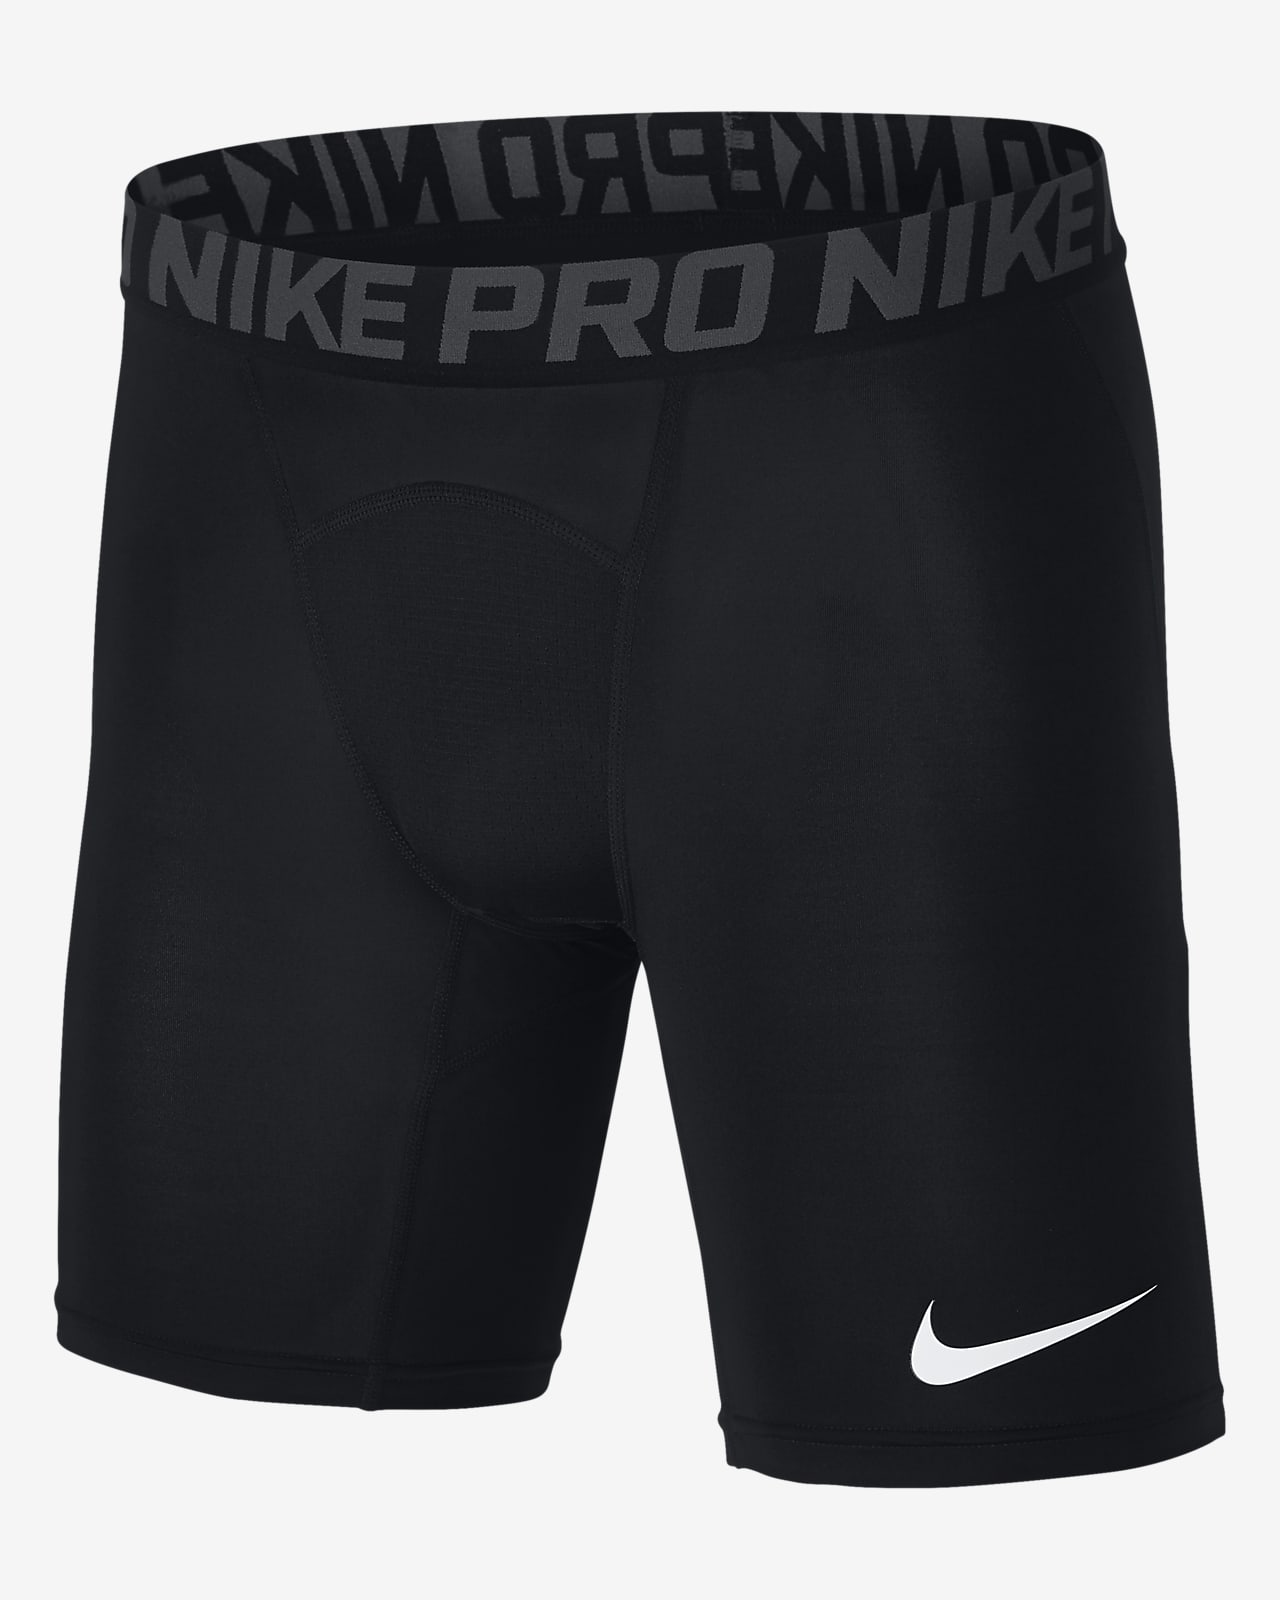 nike pro 6 inch training shorts